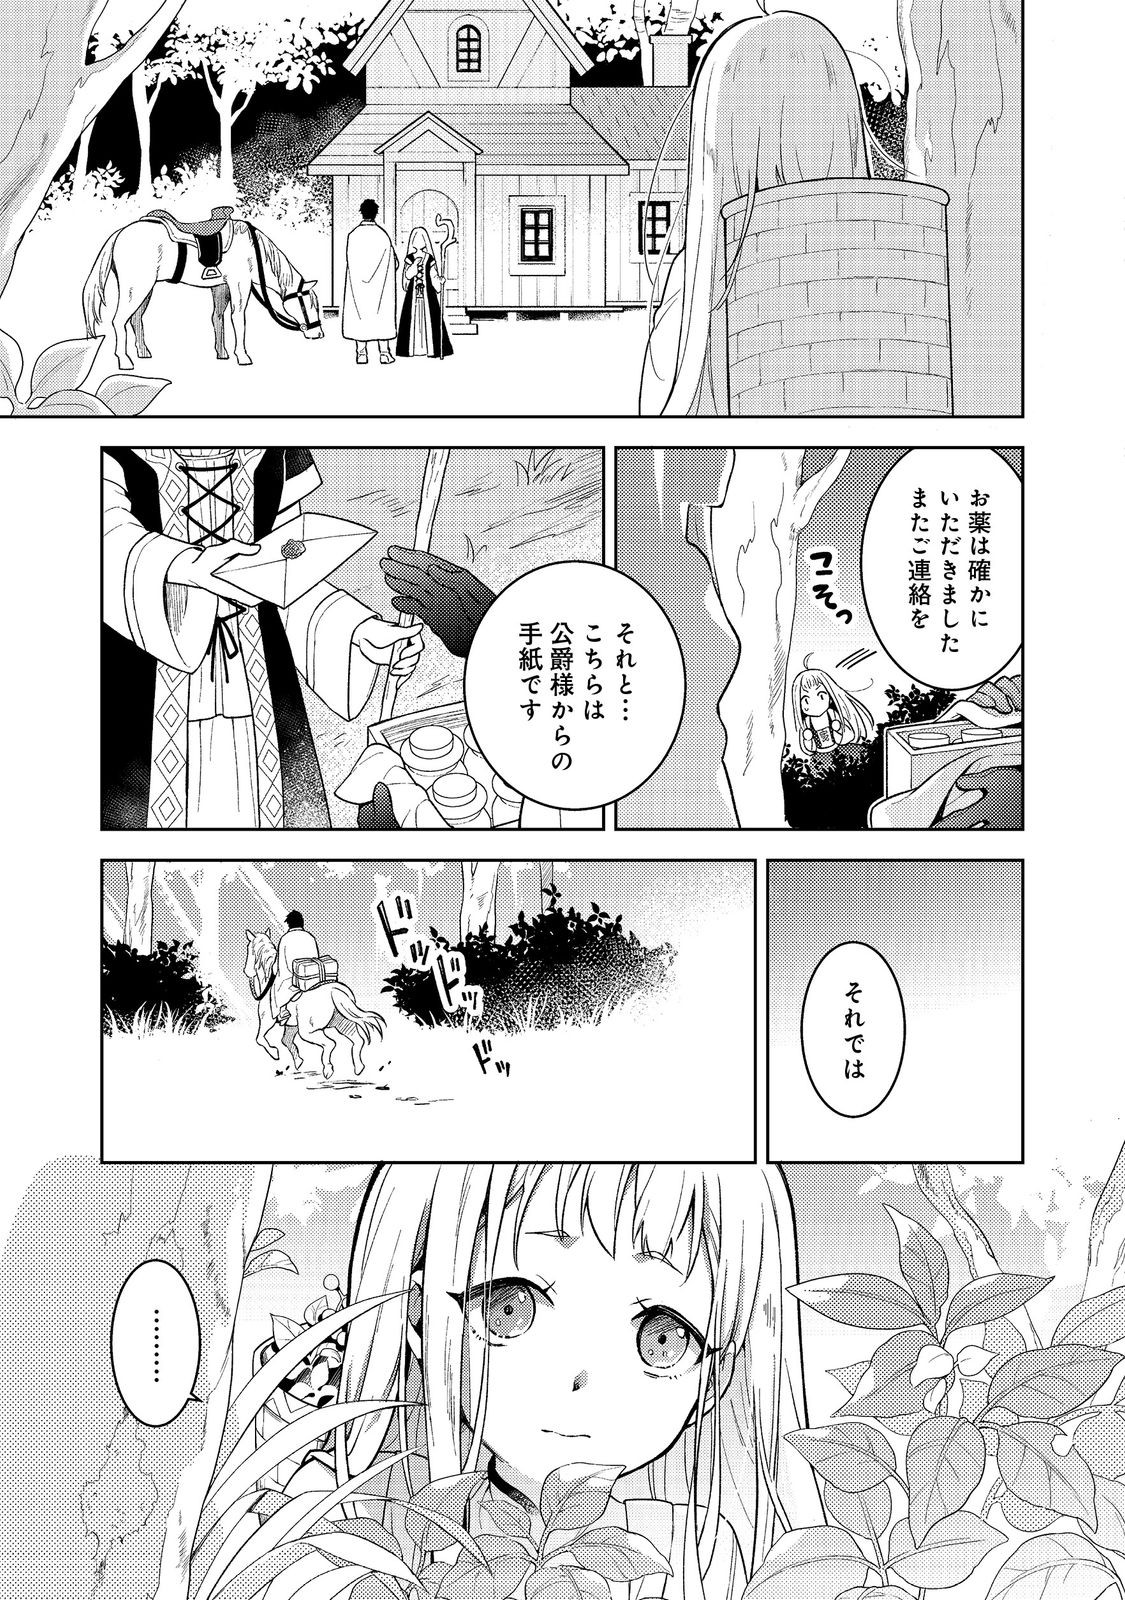 Mori no Hashikko no Chibi Majo-san - Chapter 1 - Page 5